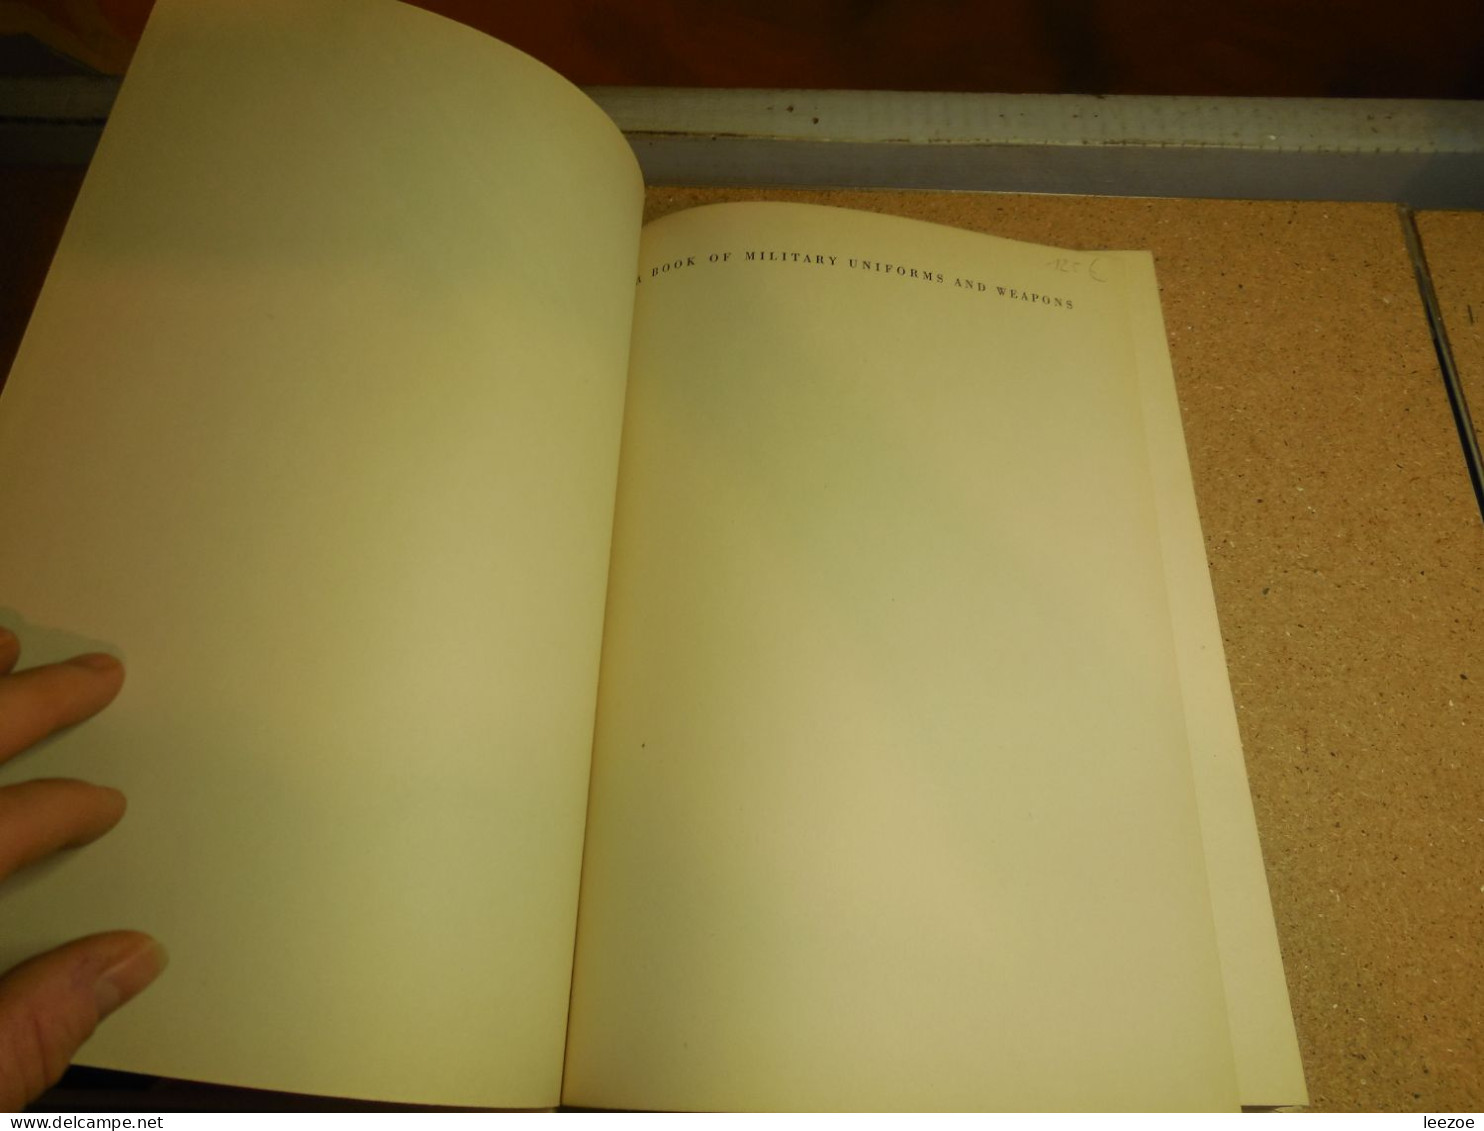 Livre  BOOK OF MILITARY UNIFORMS & WEAPONS DE KAREL TOMAN 1964..UNIFORMES ET ARMES..RARE..2C - English